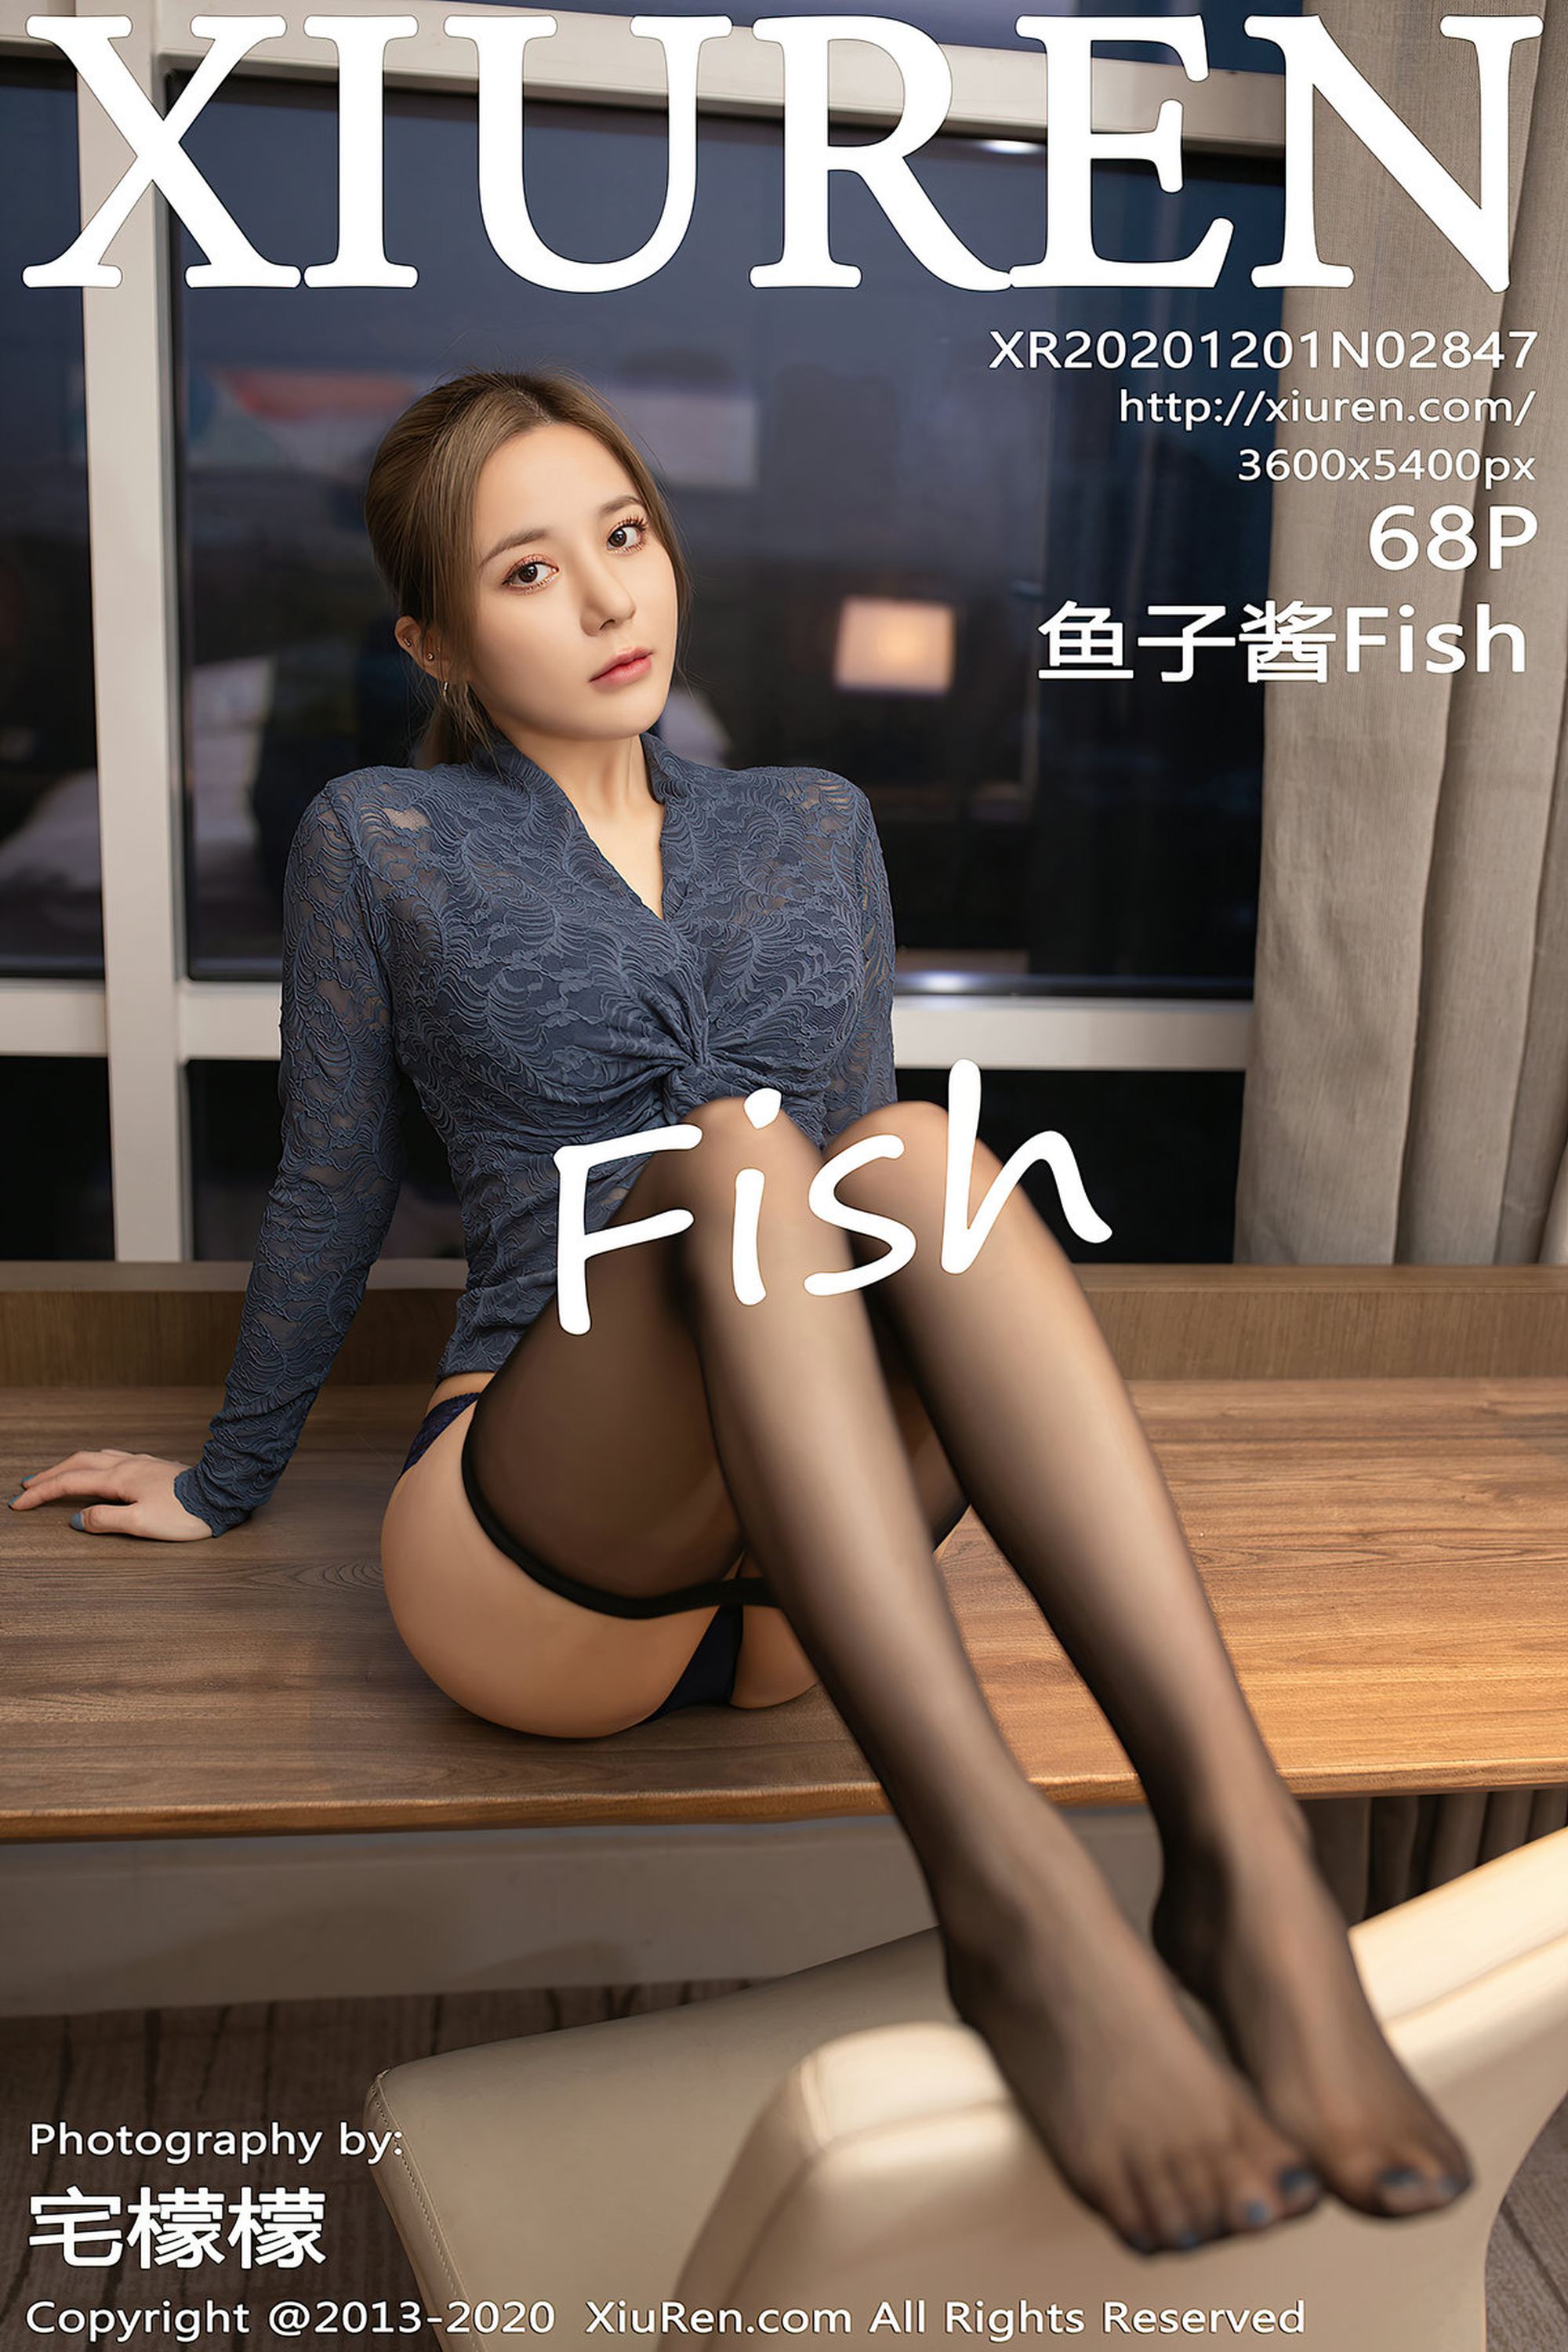 【Xiuren秀人系列】2020.12.01 No.2847 魚子醬Fish完整版無水印寫真【69P】 - 貼圖 - 絲襪美腿 -